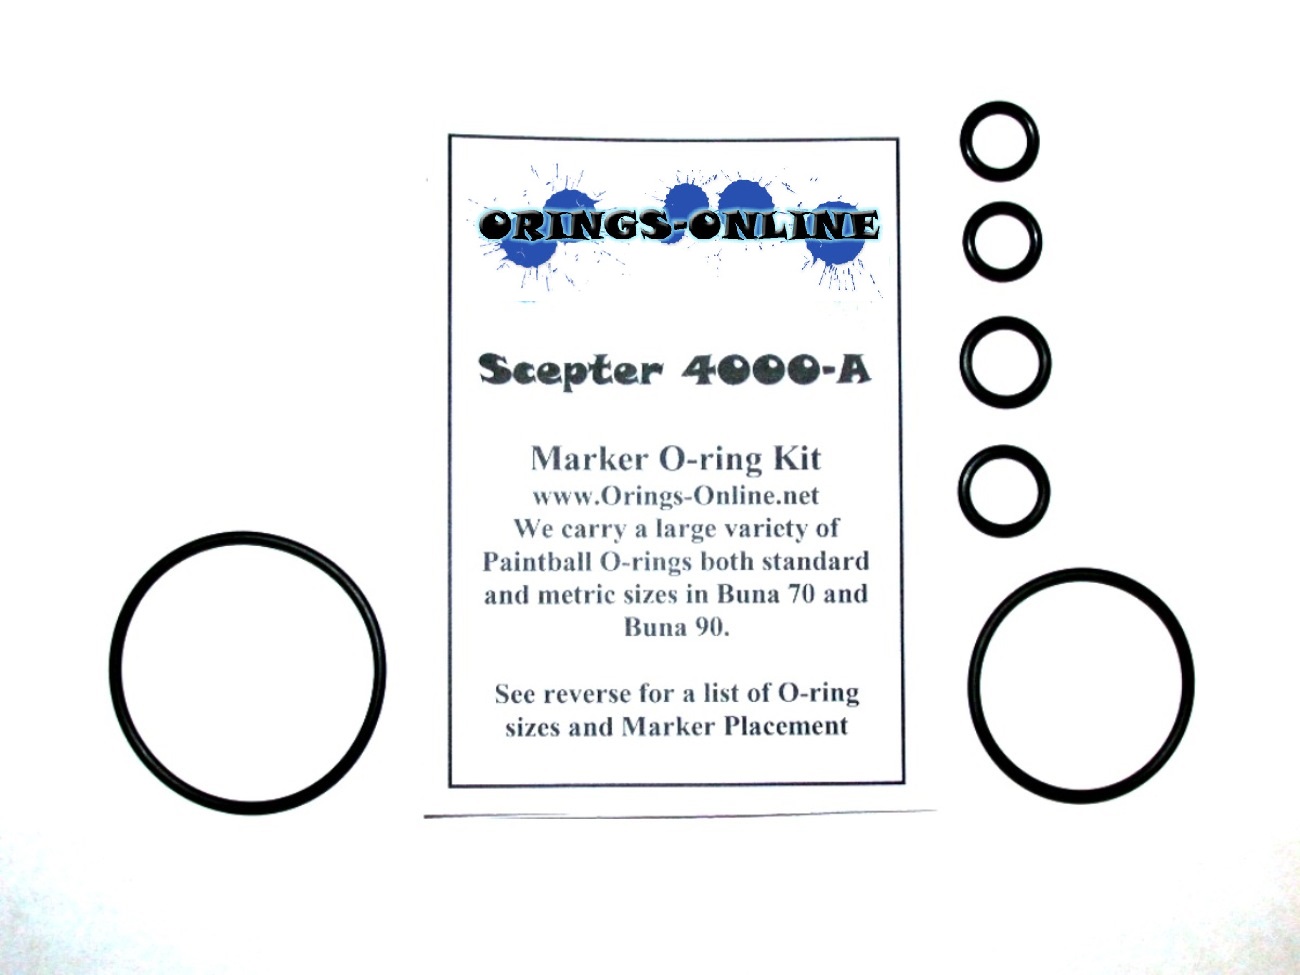 Scepter 4000-A Marker O-ring Kit